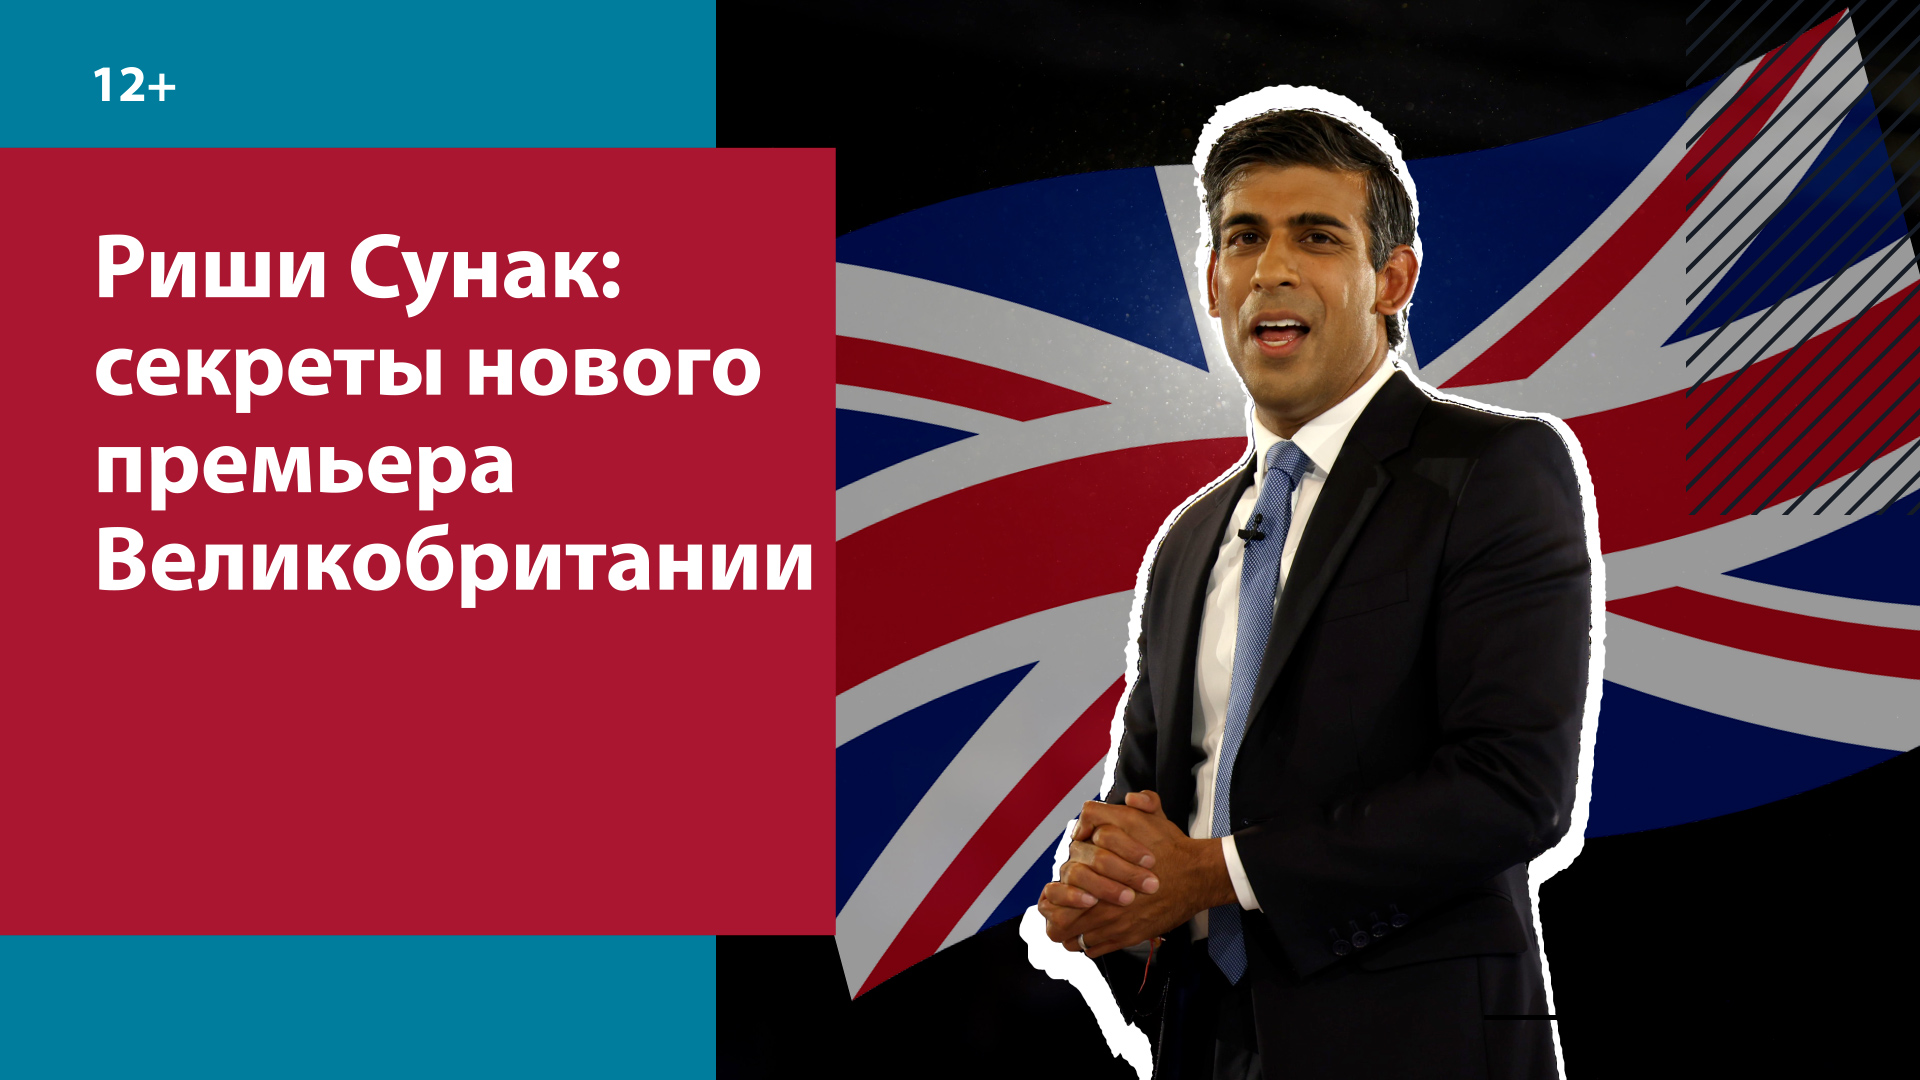 Риши Сунак вступил в должность премьер-министра Великобритании — Москва FM